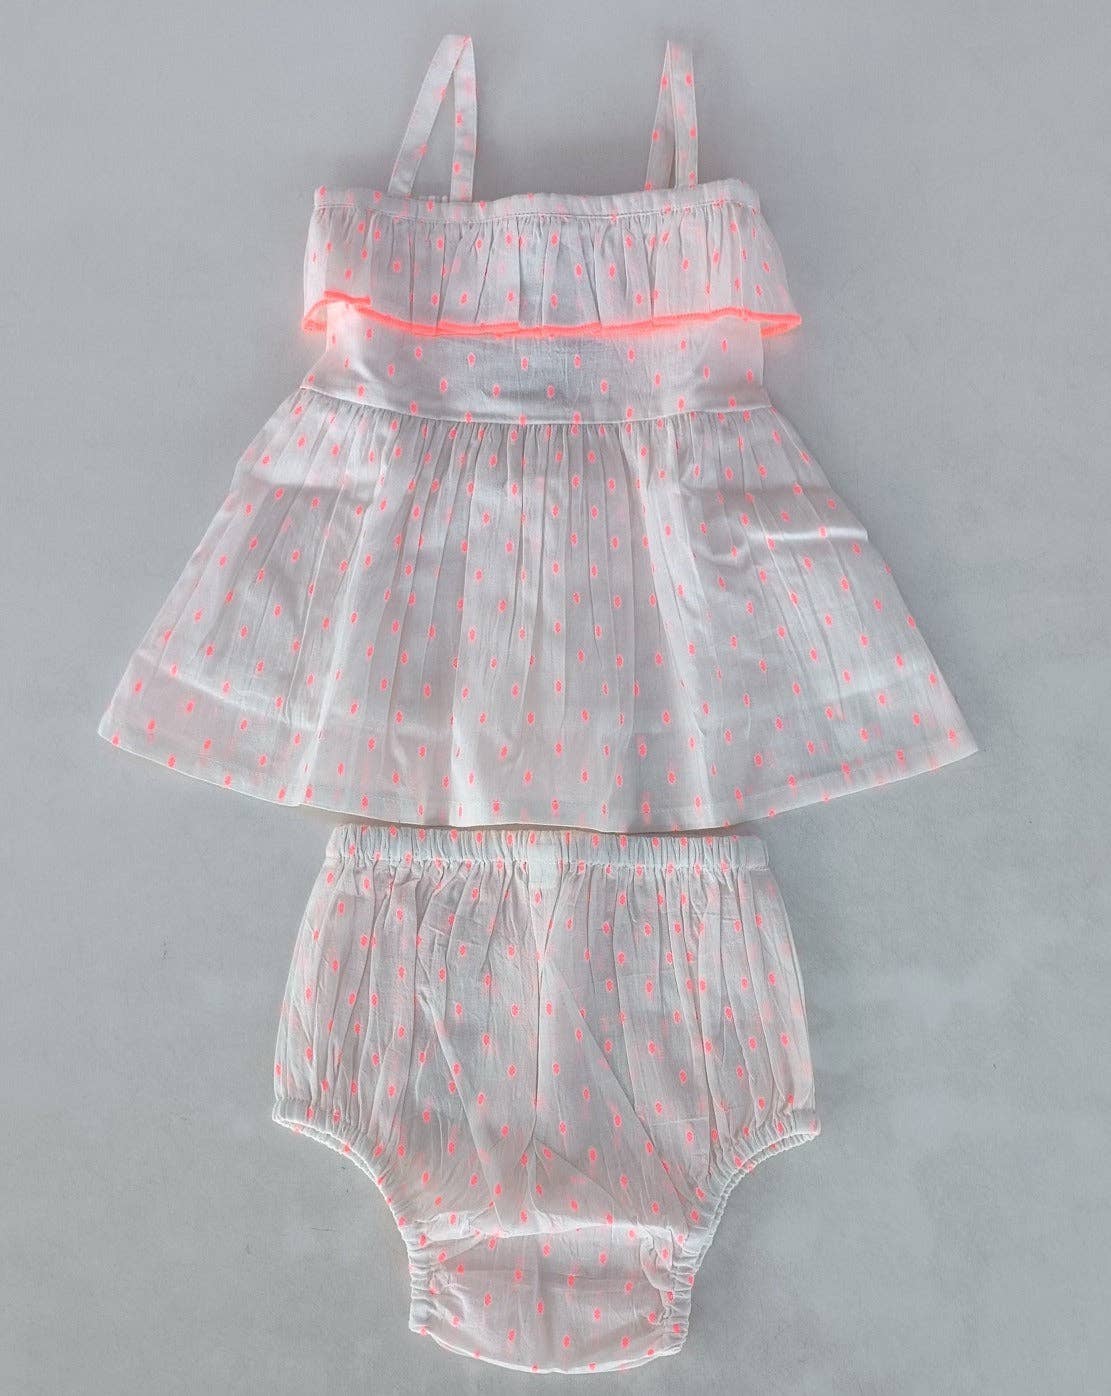 Neon Pink Cotton Dobby Yoke Ruffle Gathered Dress